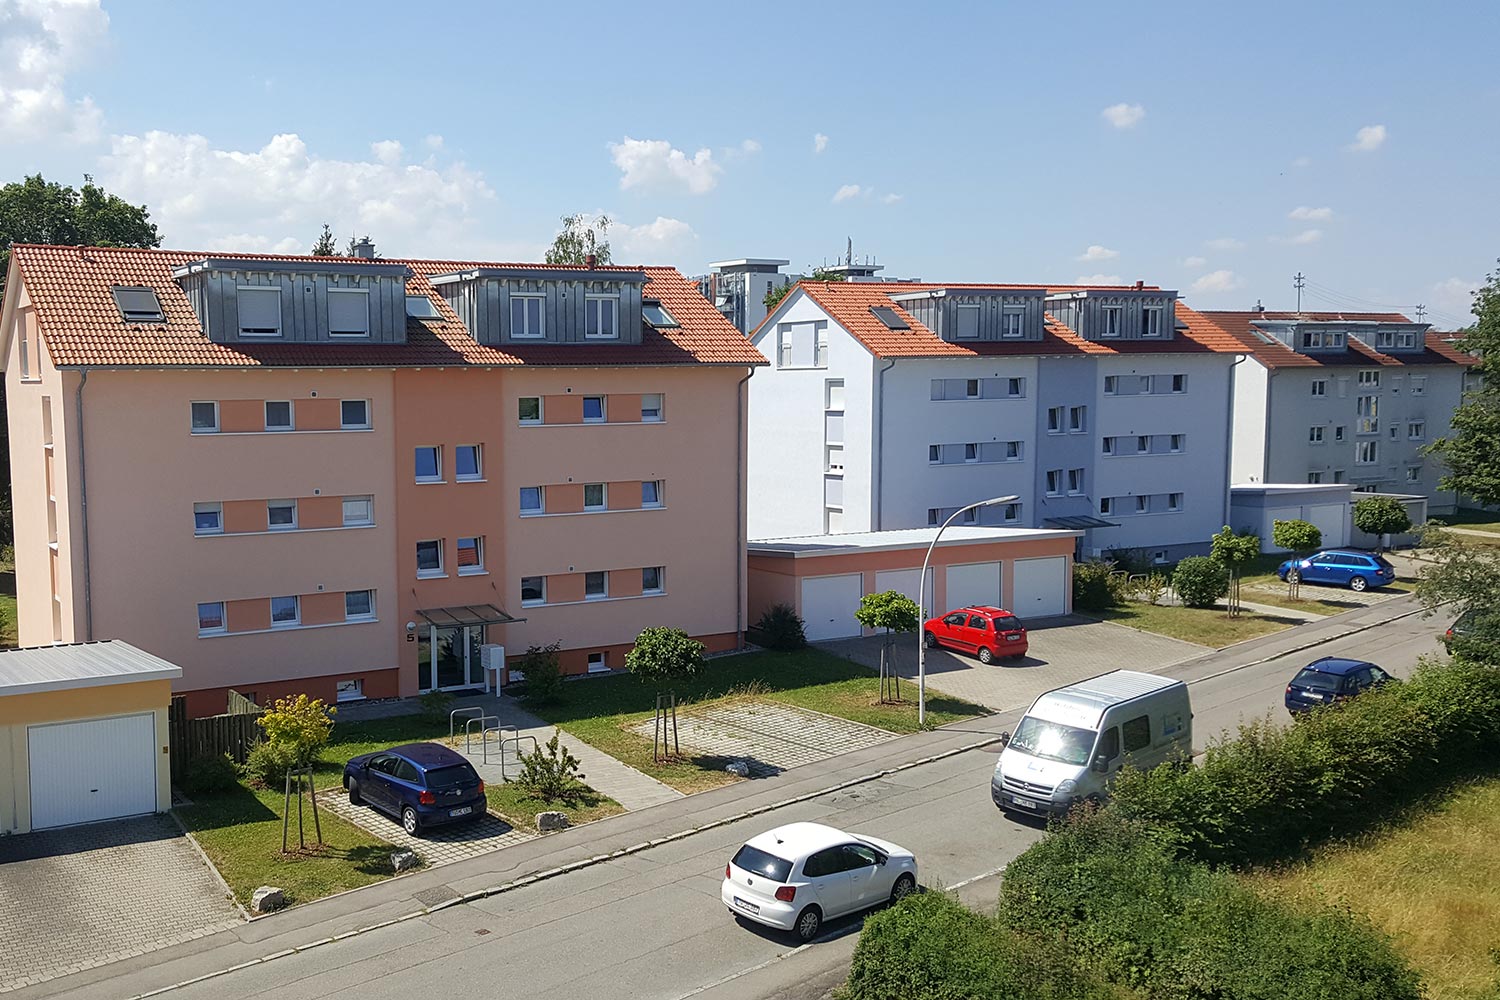 Altbau & Sarnierung | LEINS HOLZBAU in Bietenhausen / Rangendingen | Zimmerei und Innenausbau